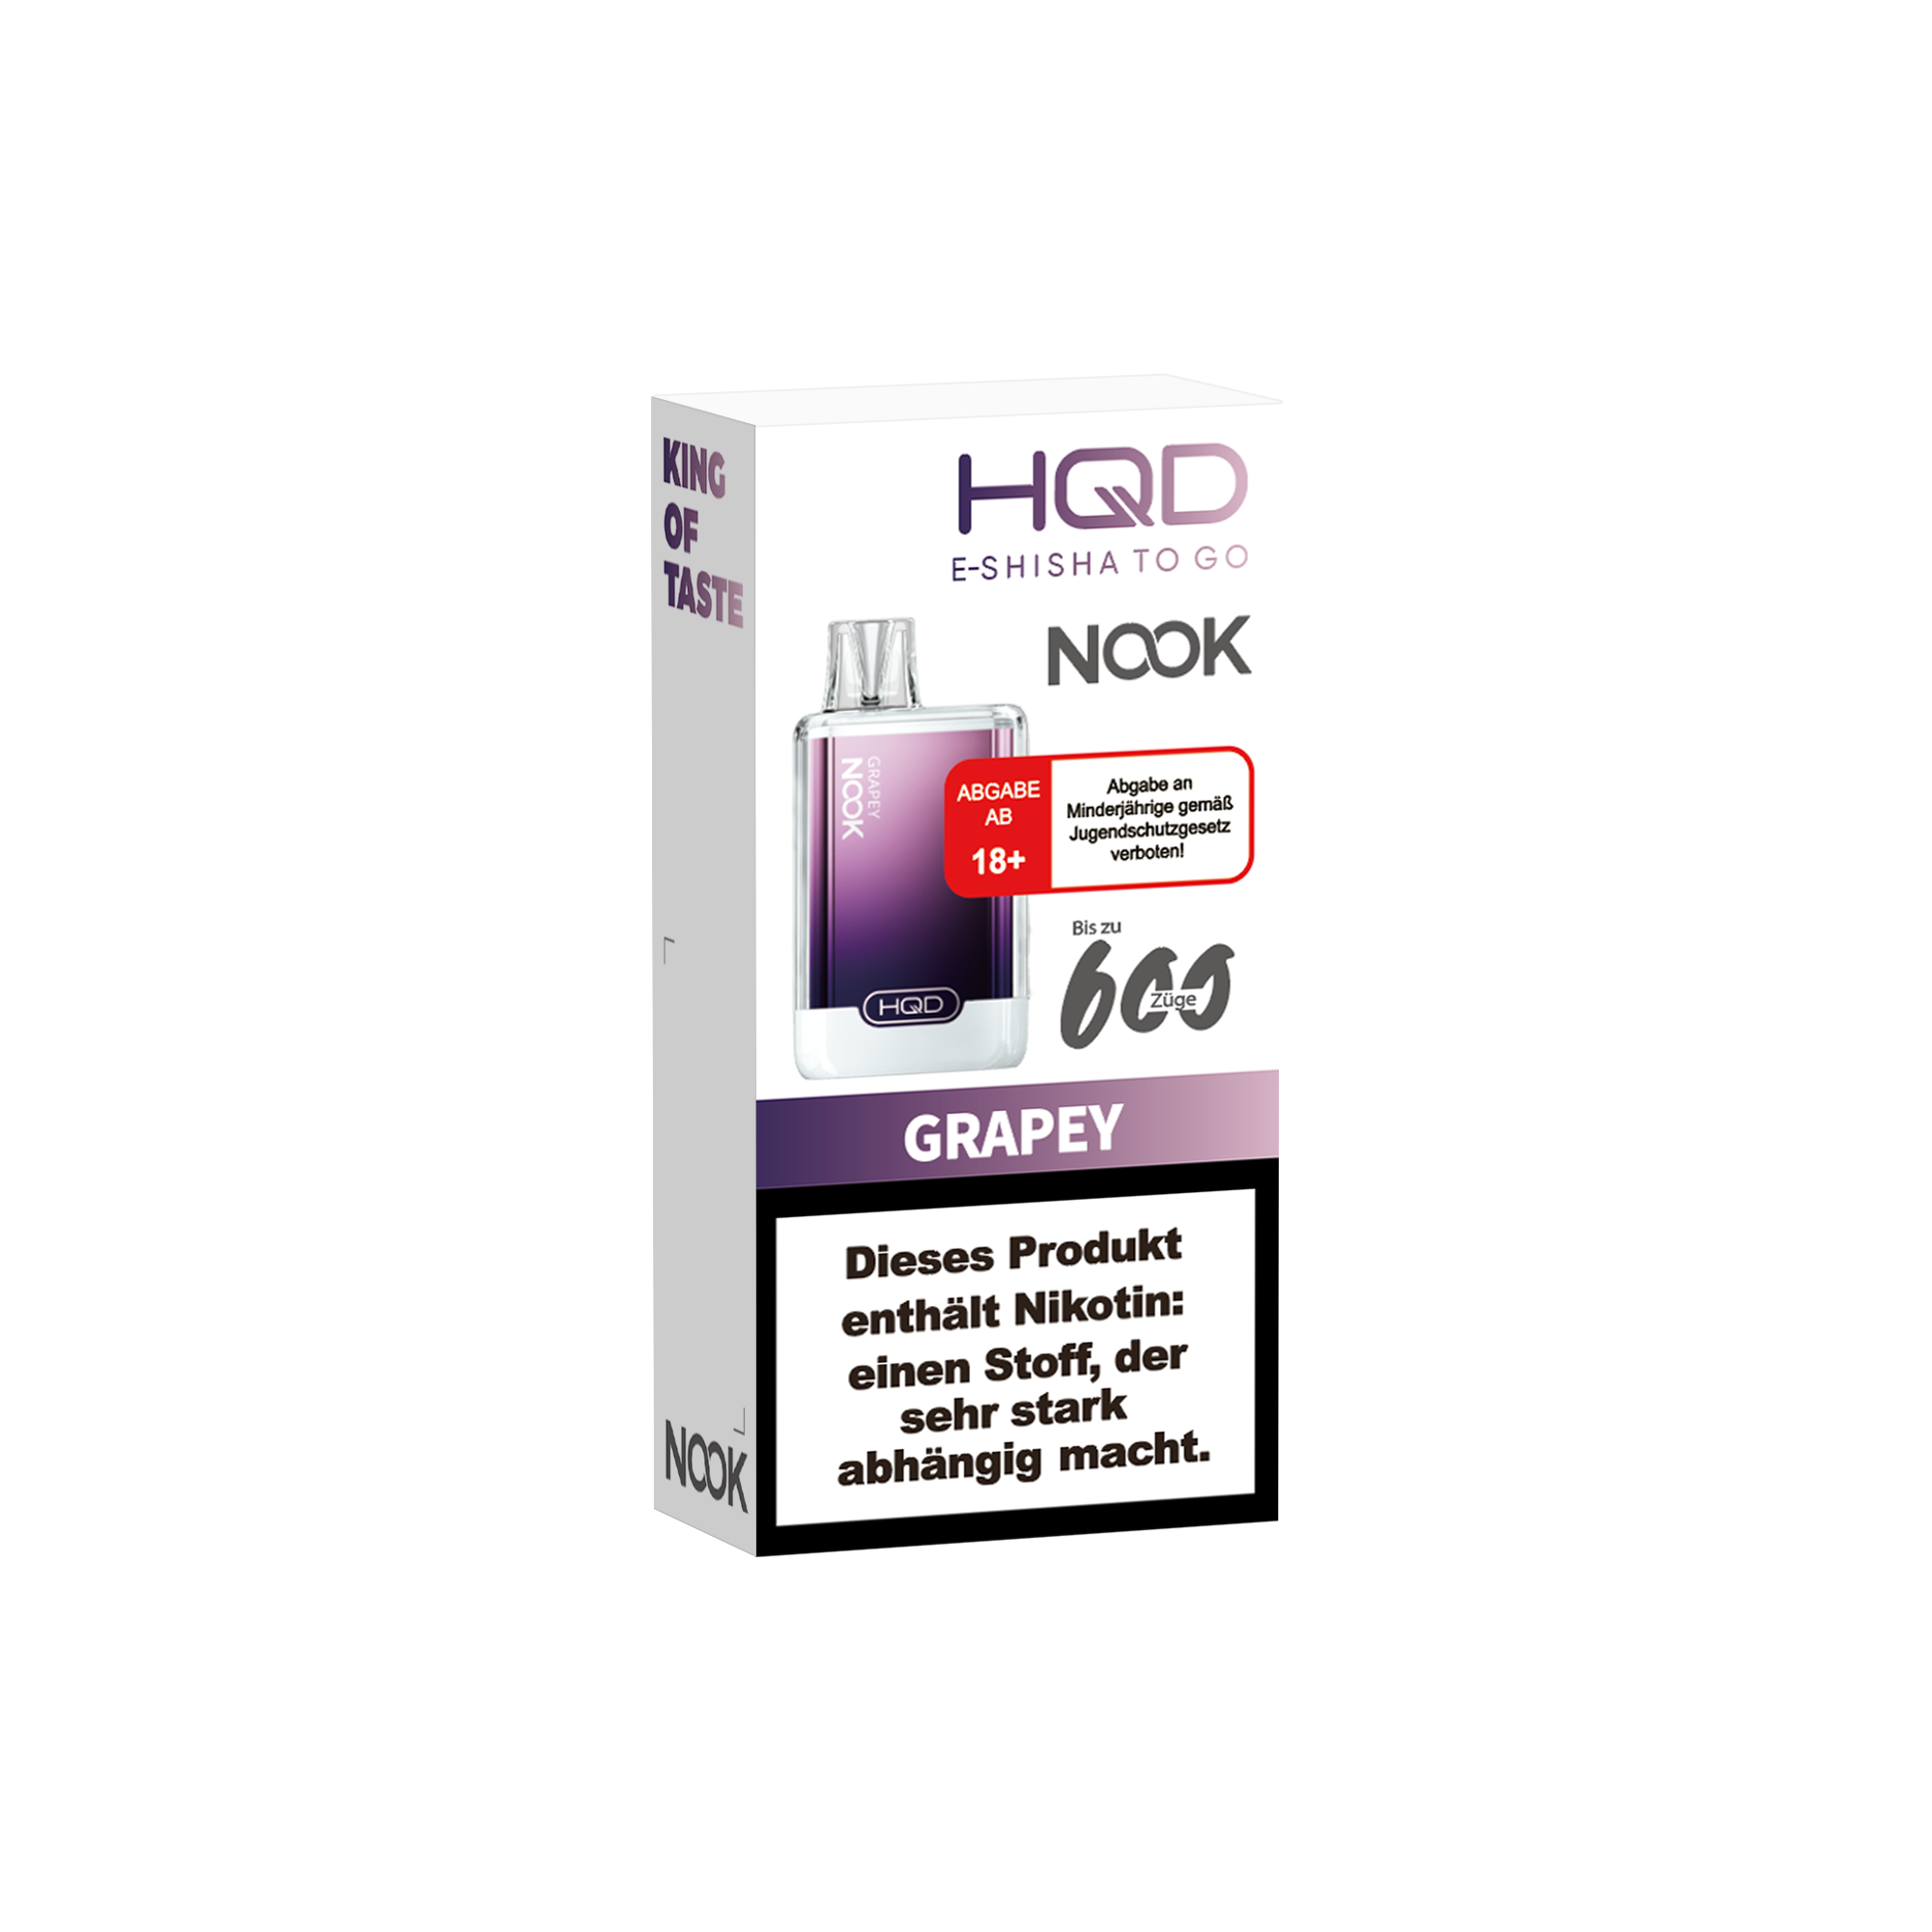 E-Zigarette HQD Nook GRAPEY 18mg Nikotin 600